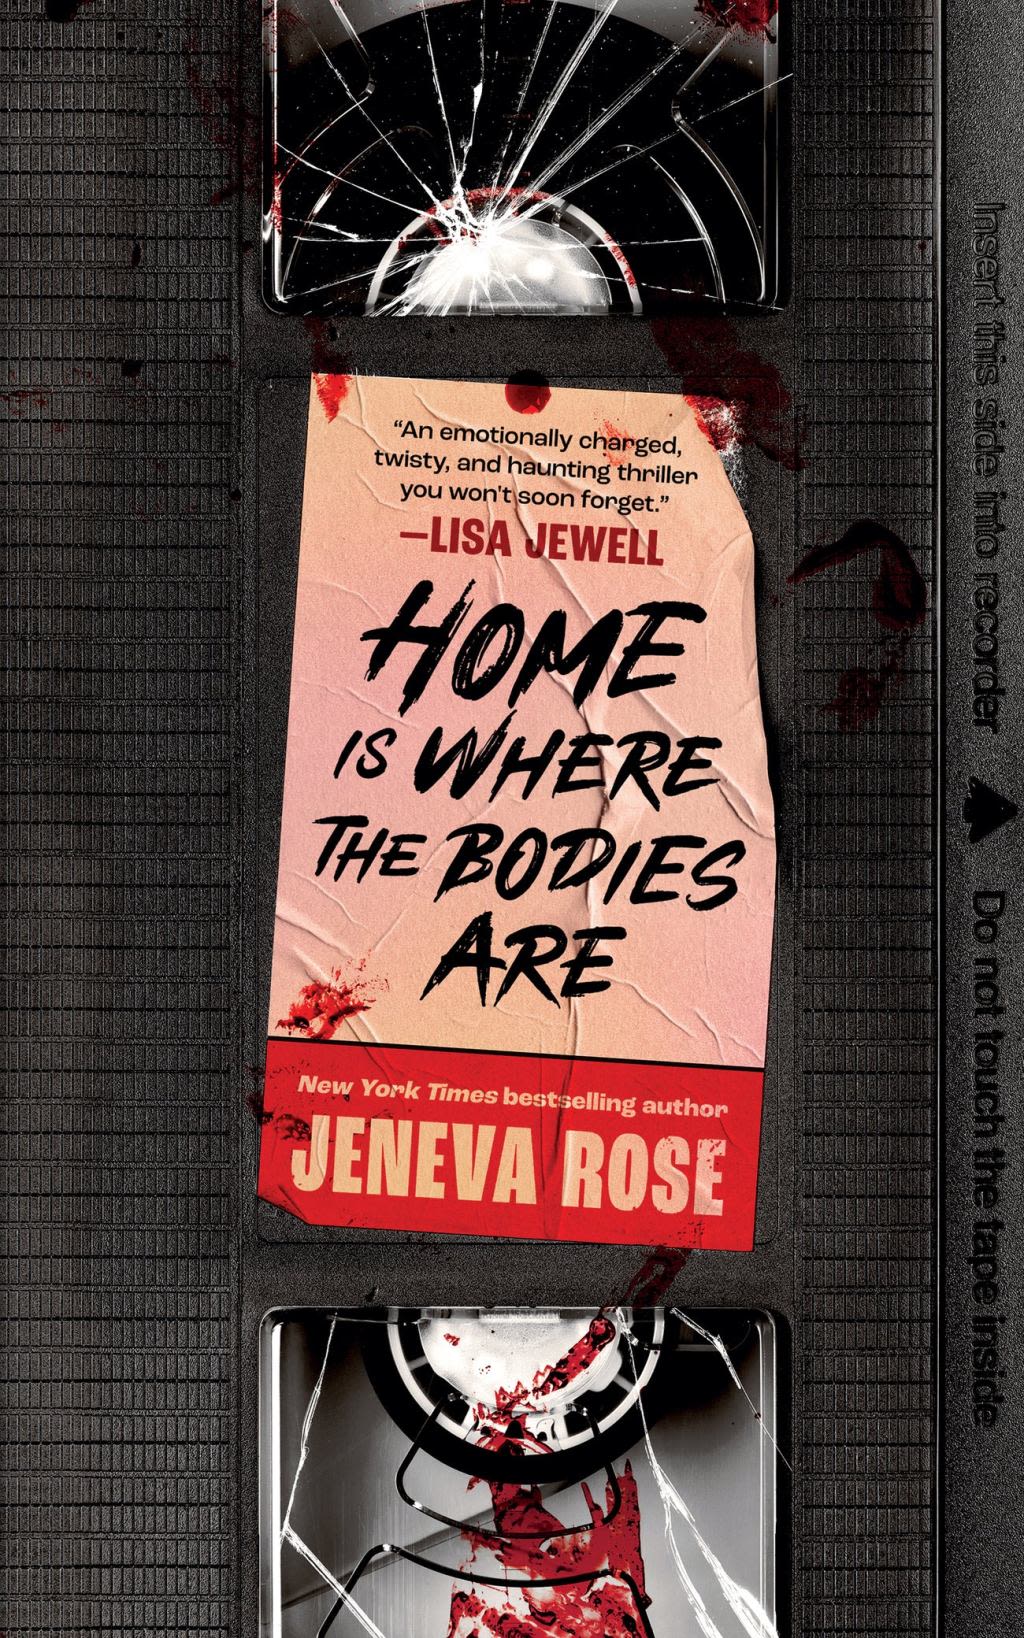 New in bestsellers: Jeneva Rose, Danielle Steel and Erik Larson